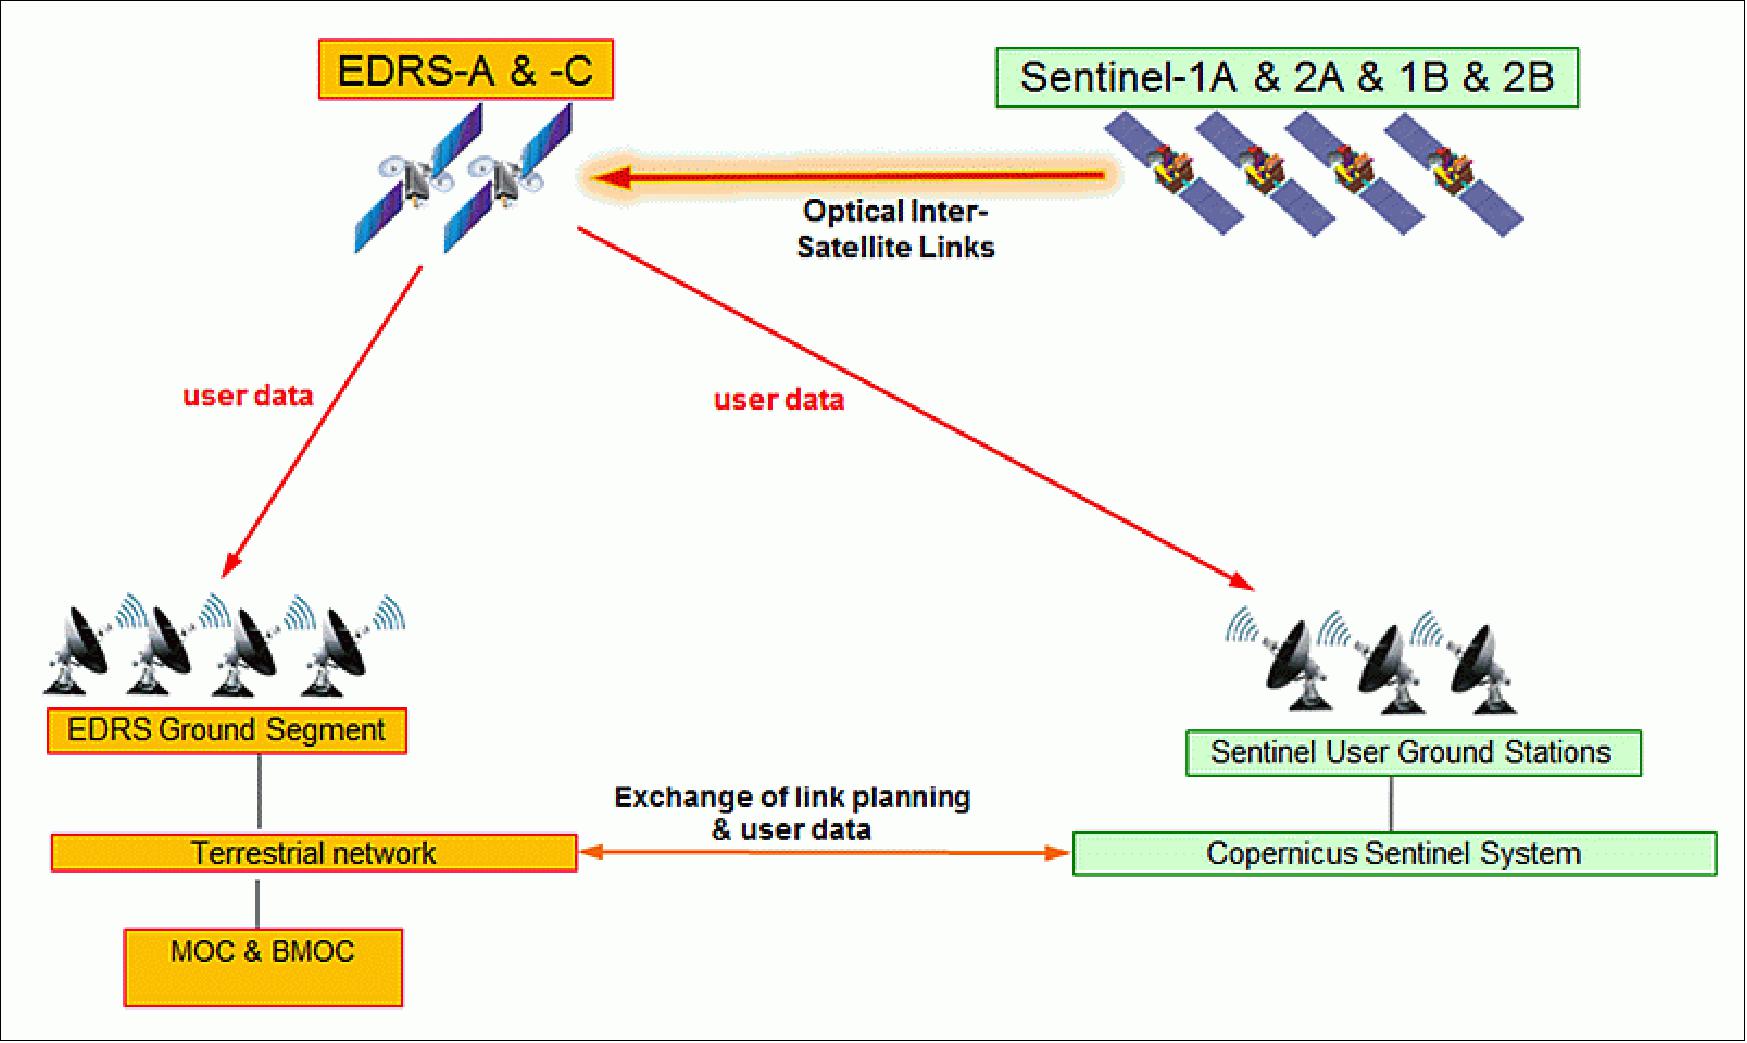 Figure 32: Service to Copernicus Sentinel satellites (image credit: EDRS consortium)